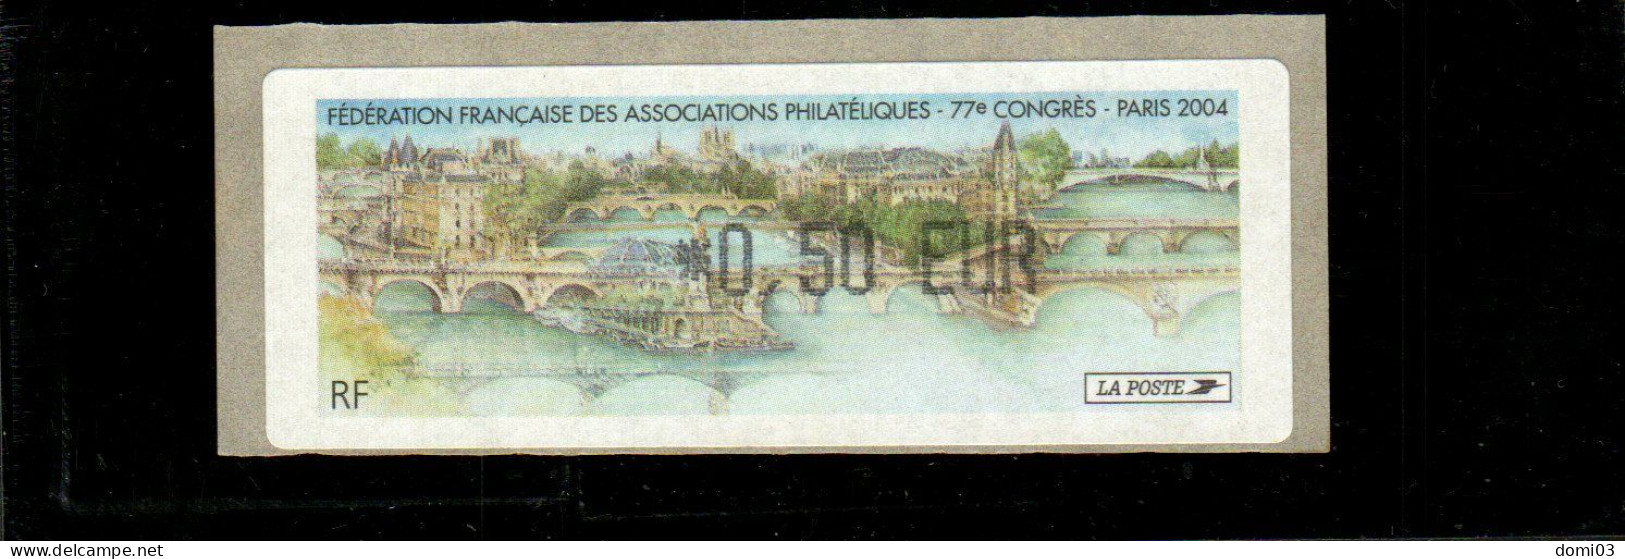 77è Congrès FFAP Paris 2004 - 1999-2009 Vignettes Illustrées